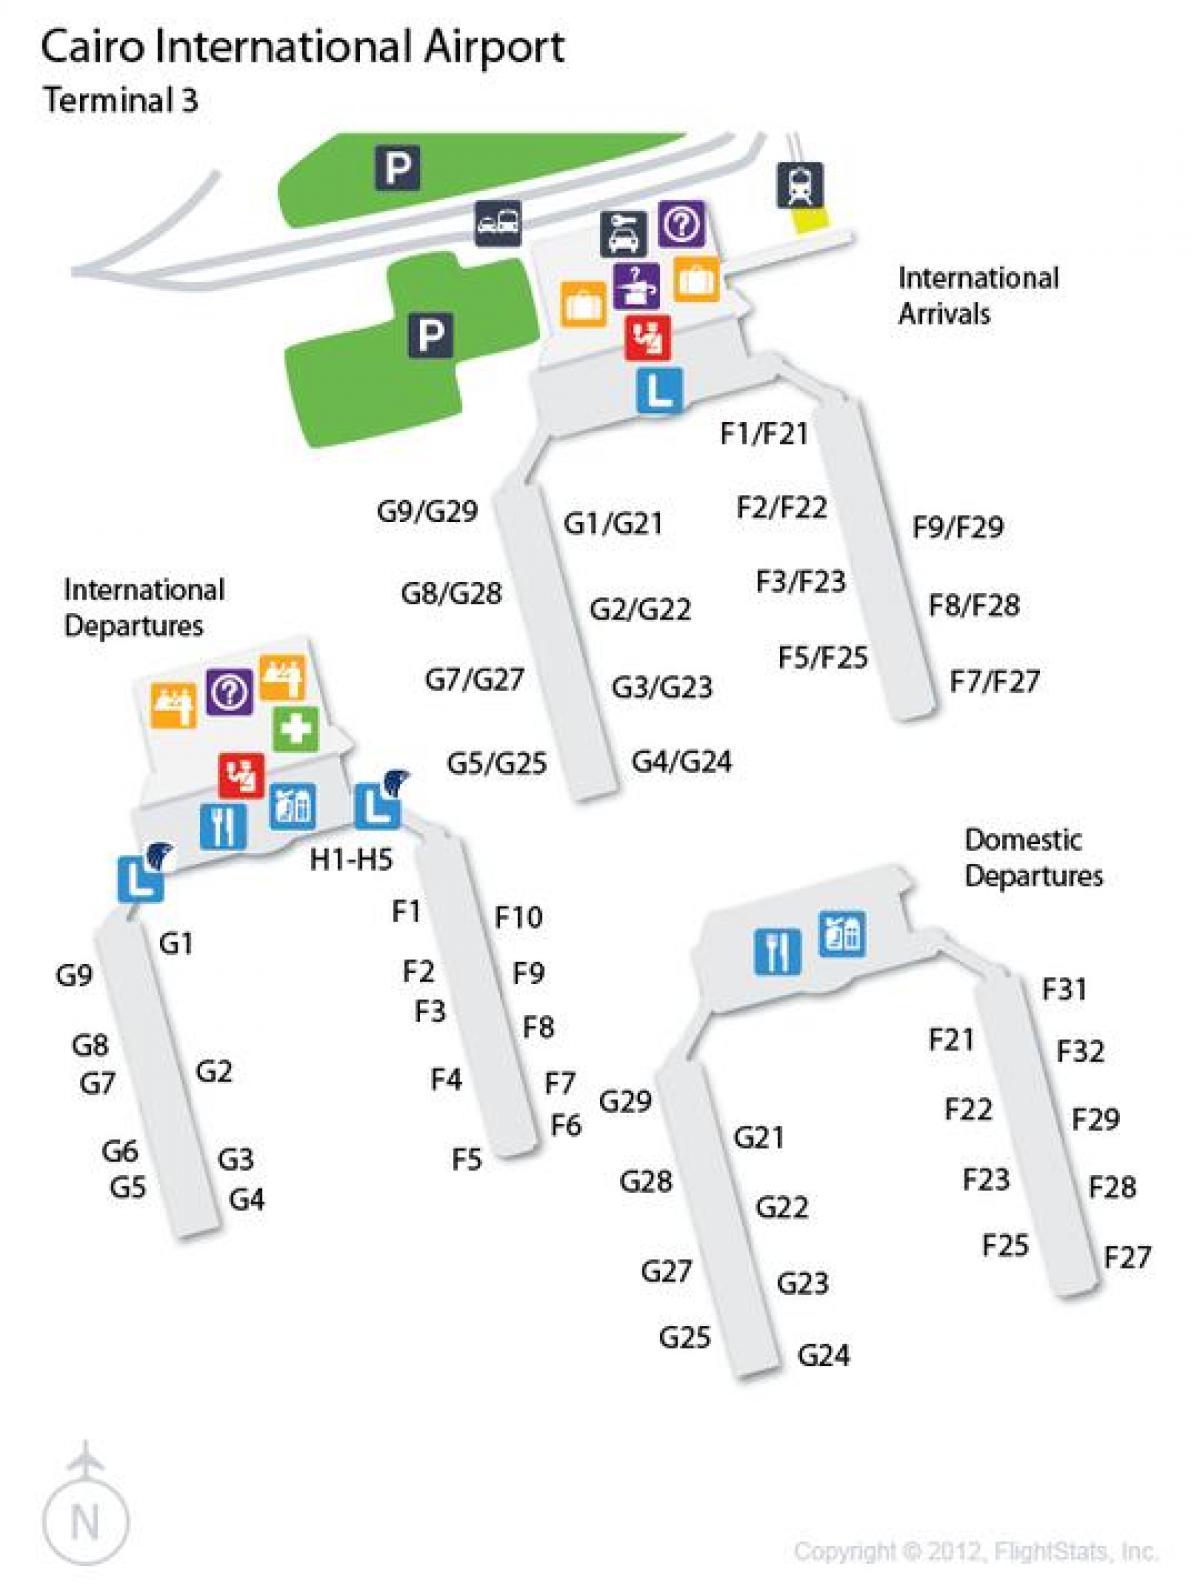 Mapa kairoko aireportuko terminal